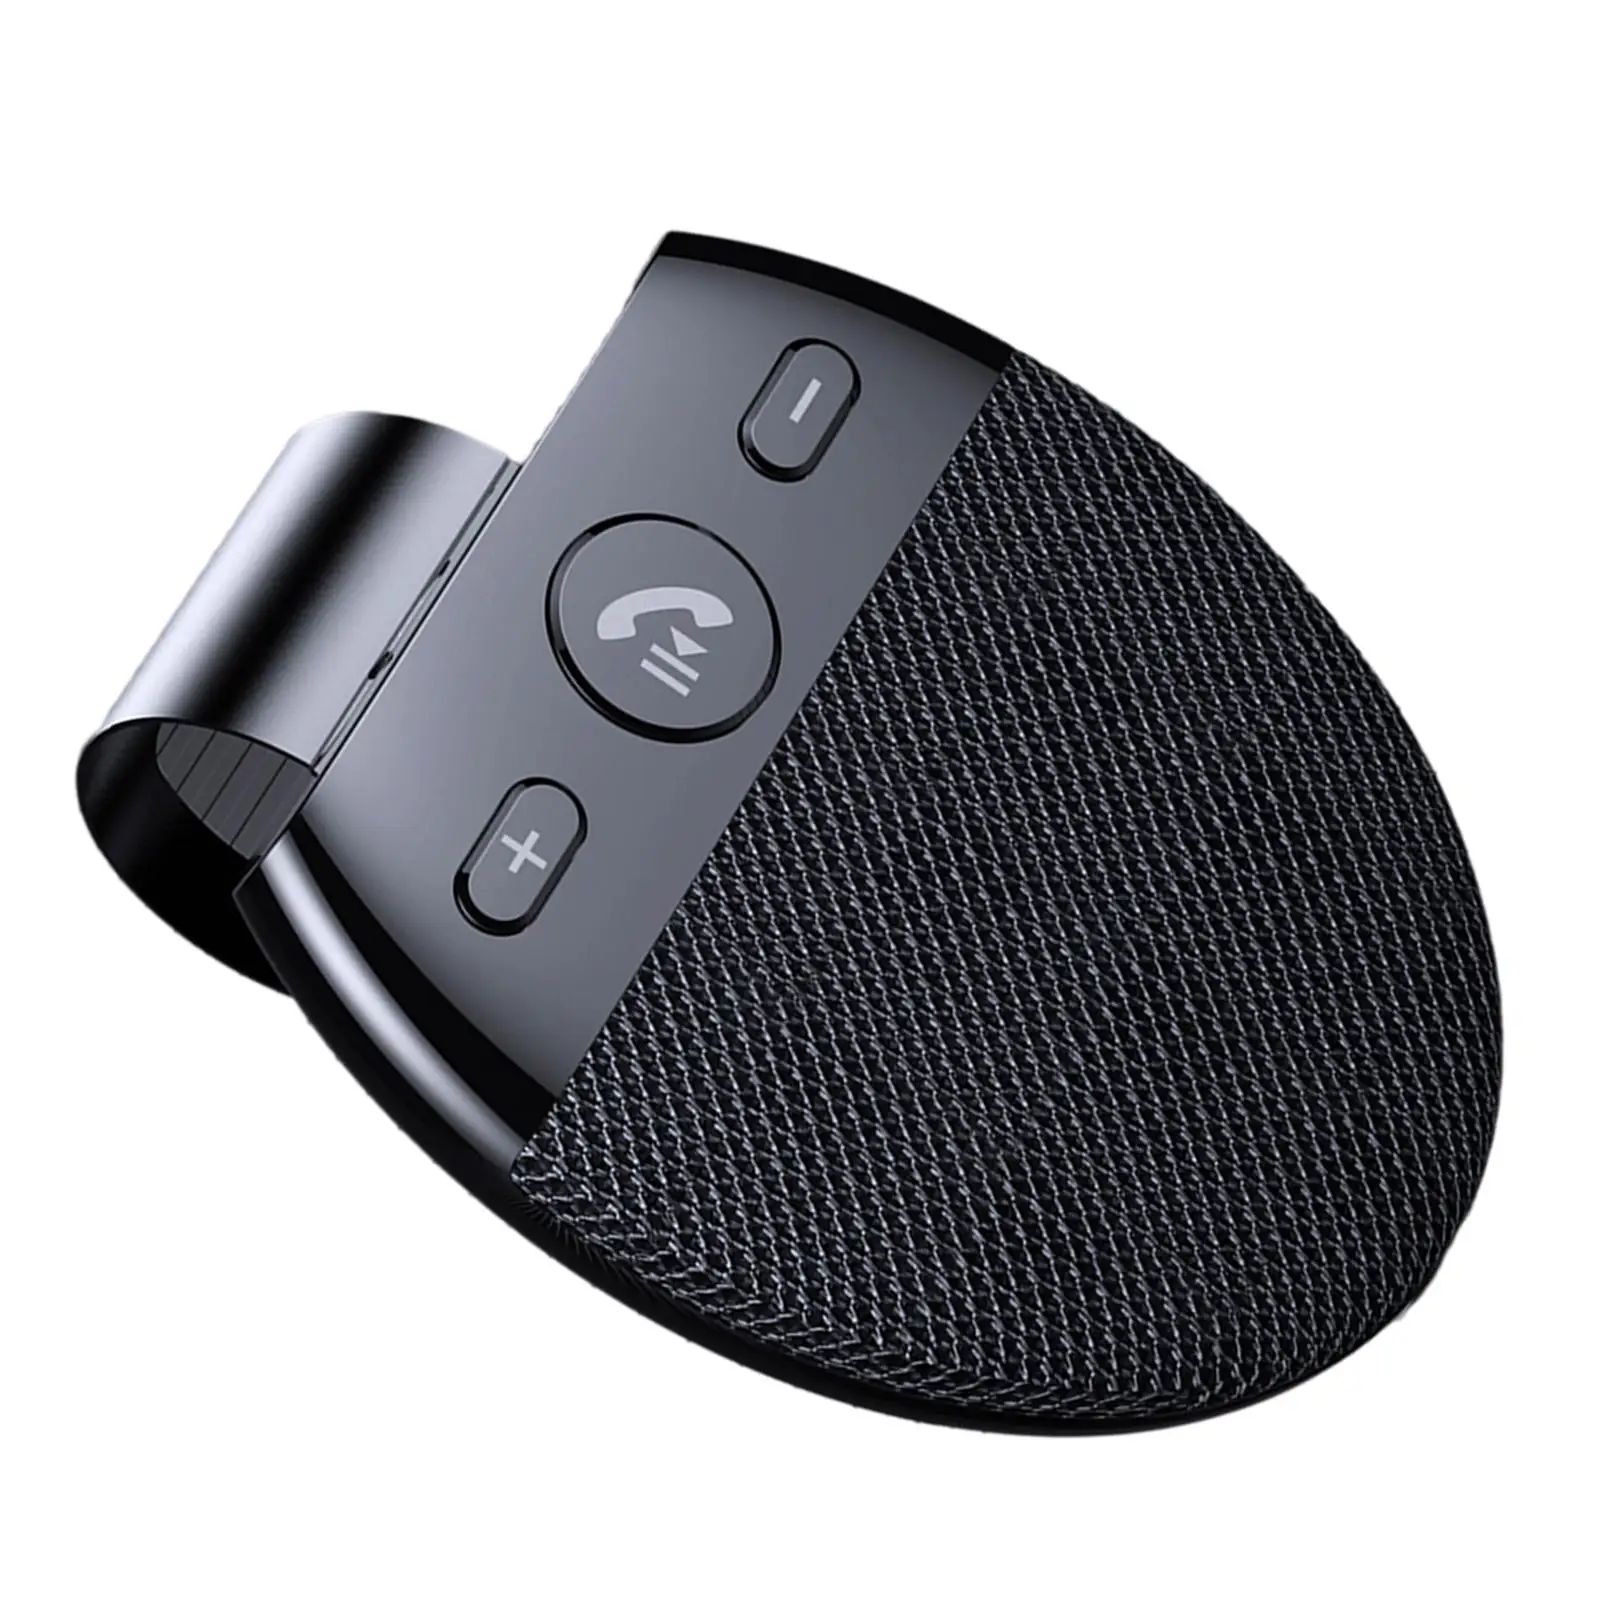  Car Speaker with Visor Clip  Speakerphone Music Player  for Handsfree Calling Black